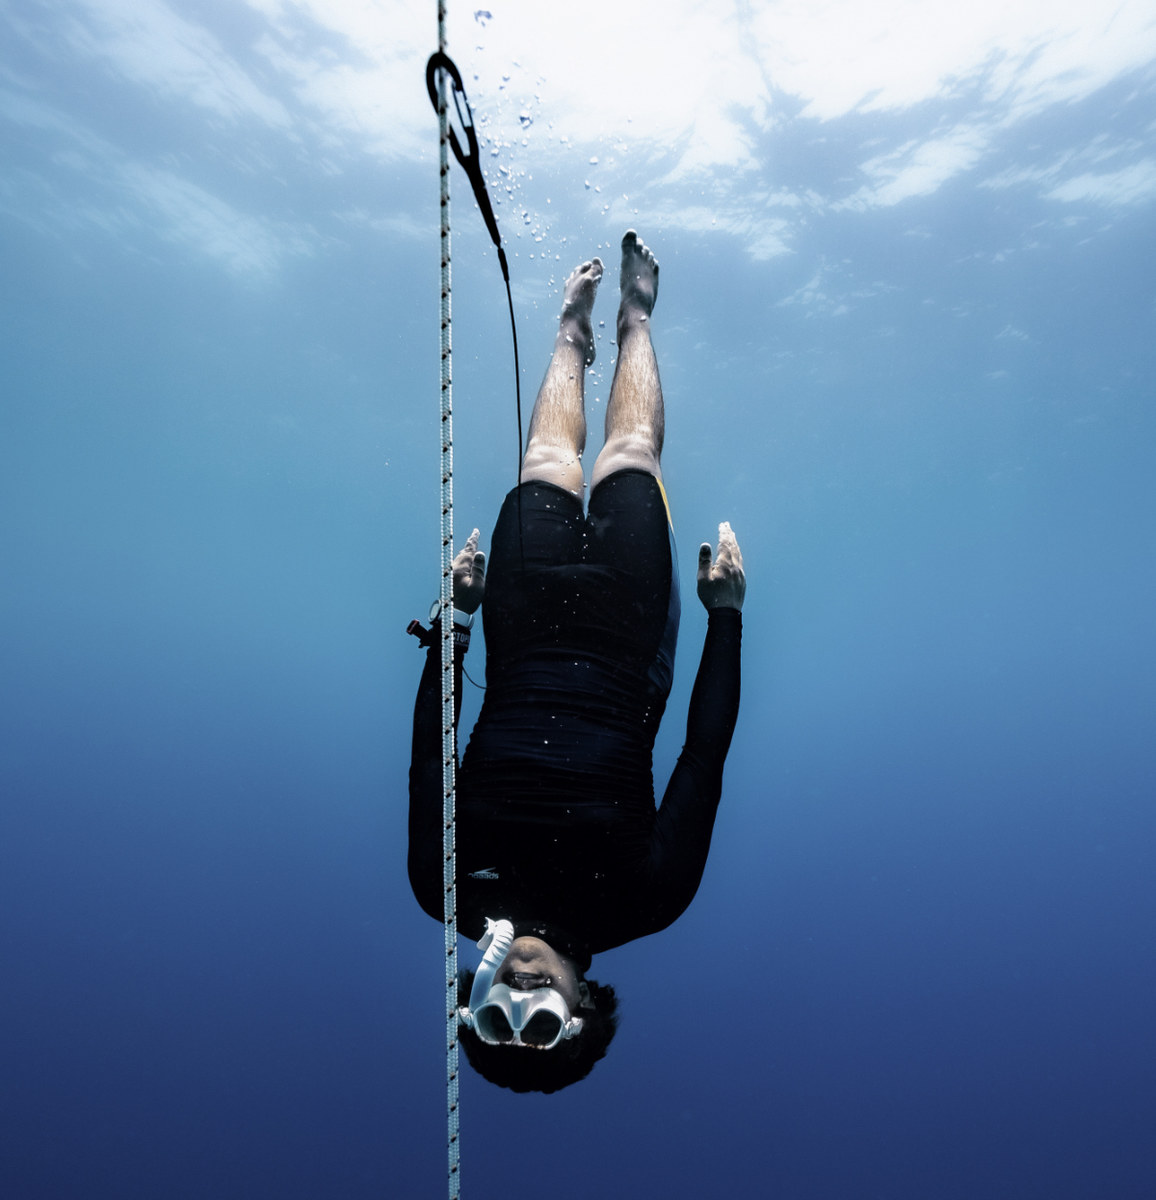 Fayçal Abdulsalam, un plongeur qui passe beaucoup de temps sous l'eau, a déclaré à Arab News que l'expérience l'avait transformé, dissipant les énergies négatives et revitalisant sa vie. (Fournie)